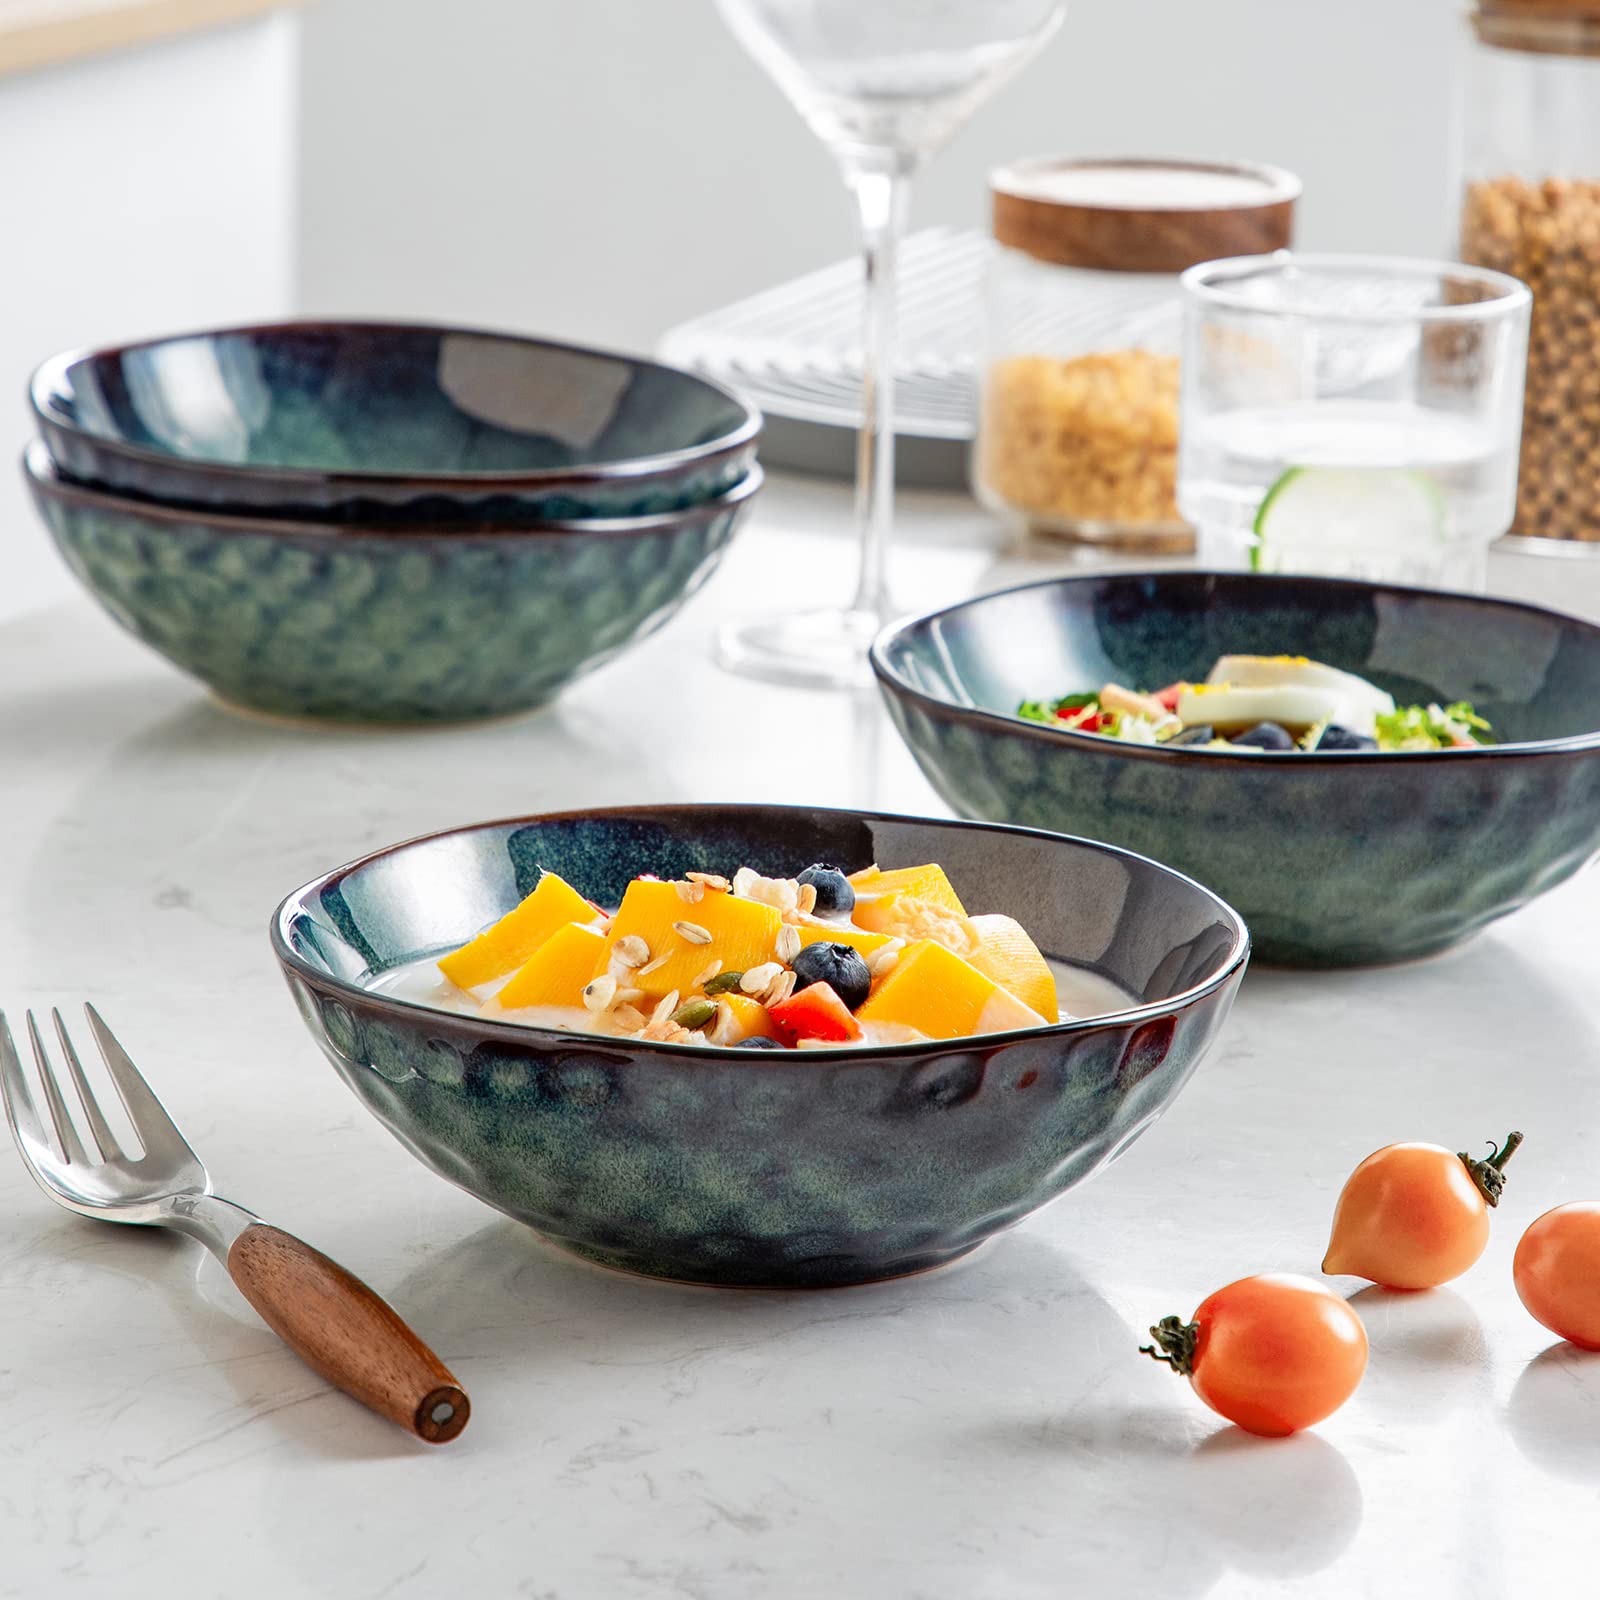 vancasso Starry 24oz Cereal bowls, Porcelain Set of 4 Pasta Bowls Lead-free Soup Bowls, Green Bowl for Kitchen, Ceramic Bowls for Cereal Soup Oatmeal Salad, Dishwasher & Microwave Safe